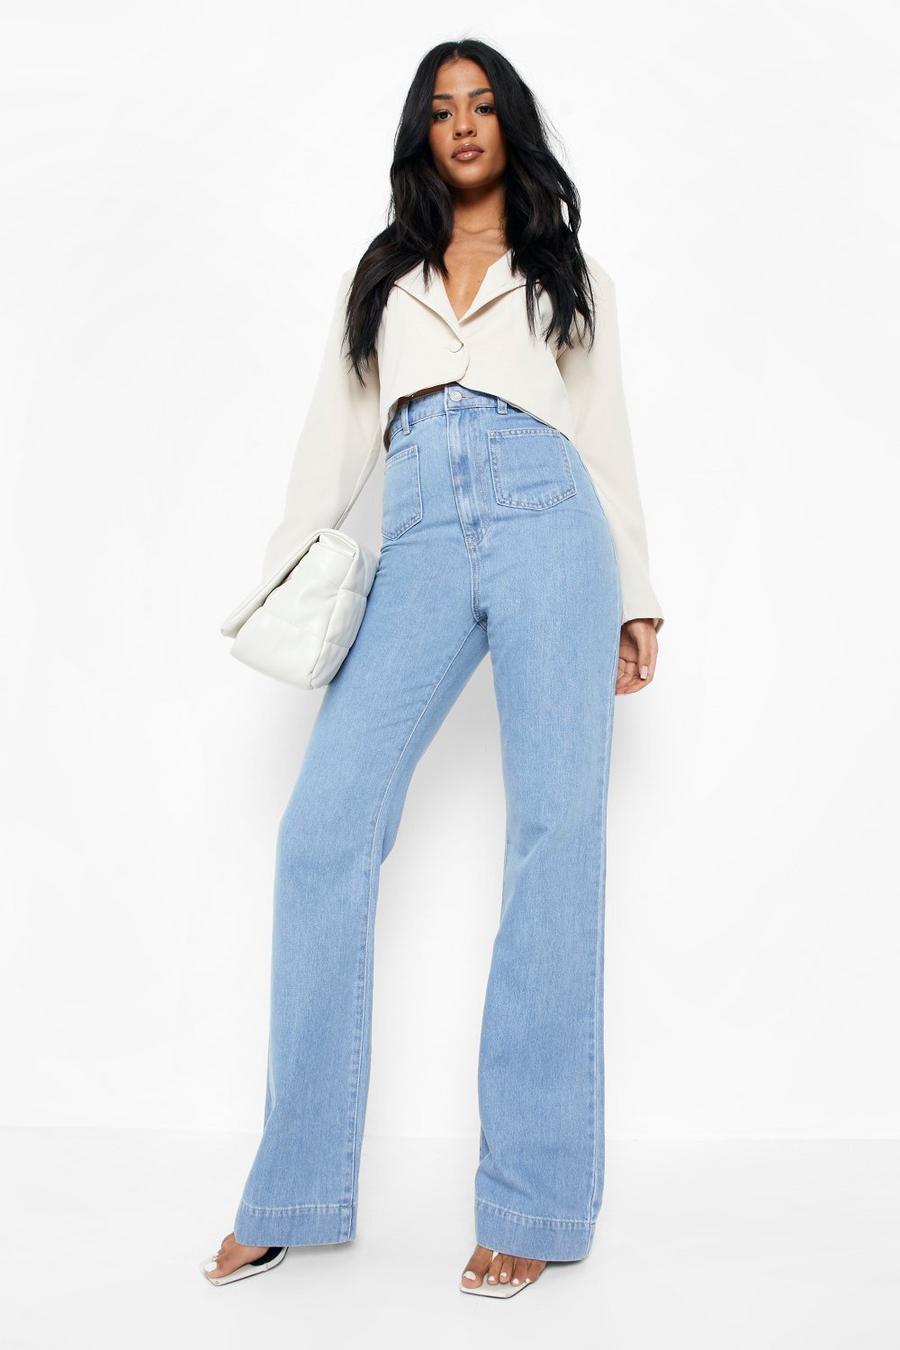 דהוי קלות ג'ינס בגזרה ישרה עם כיס, לנשים גבוהות image number 1